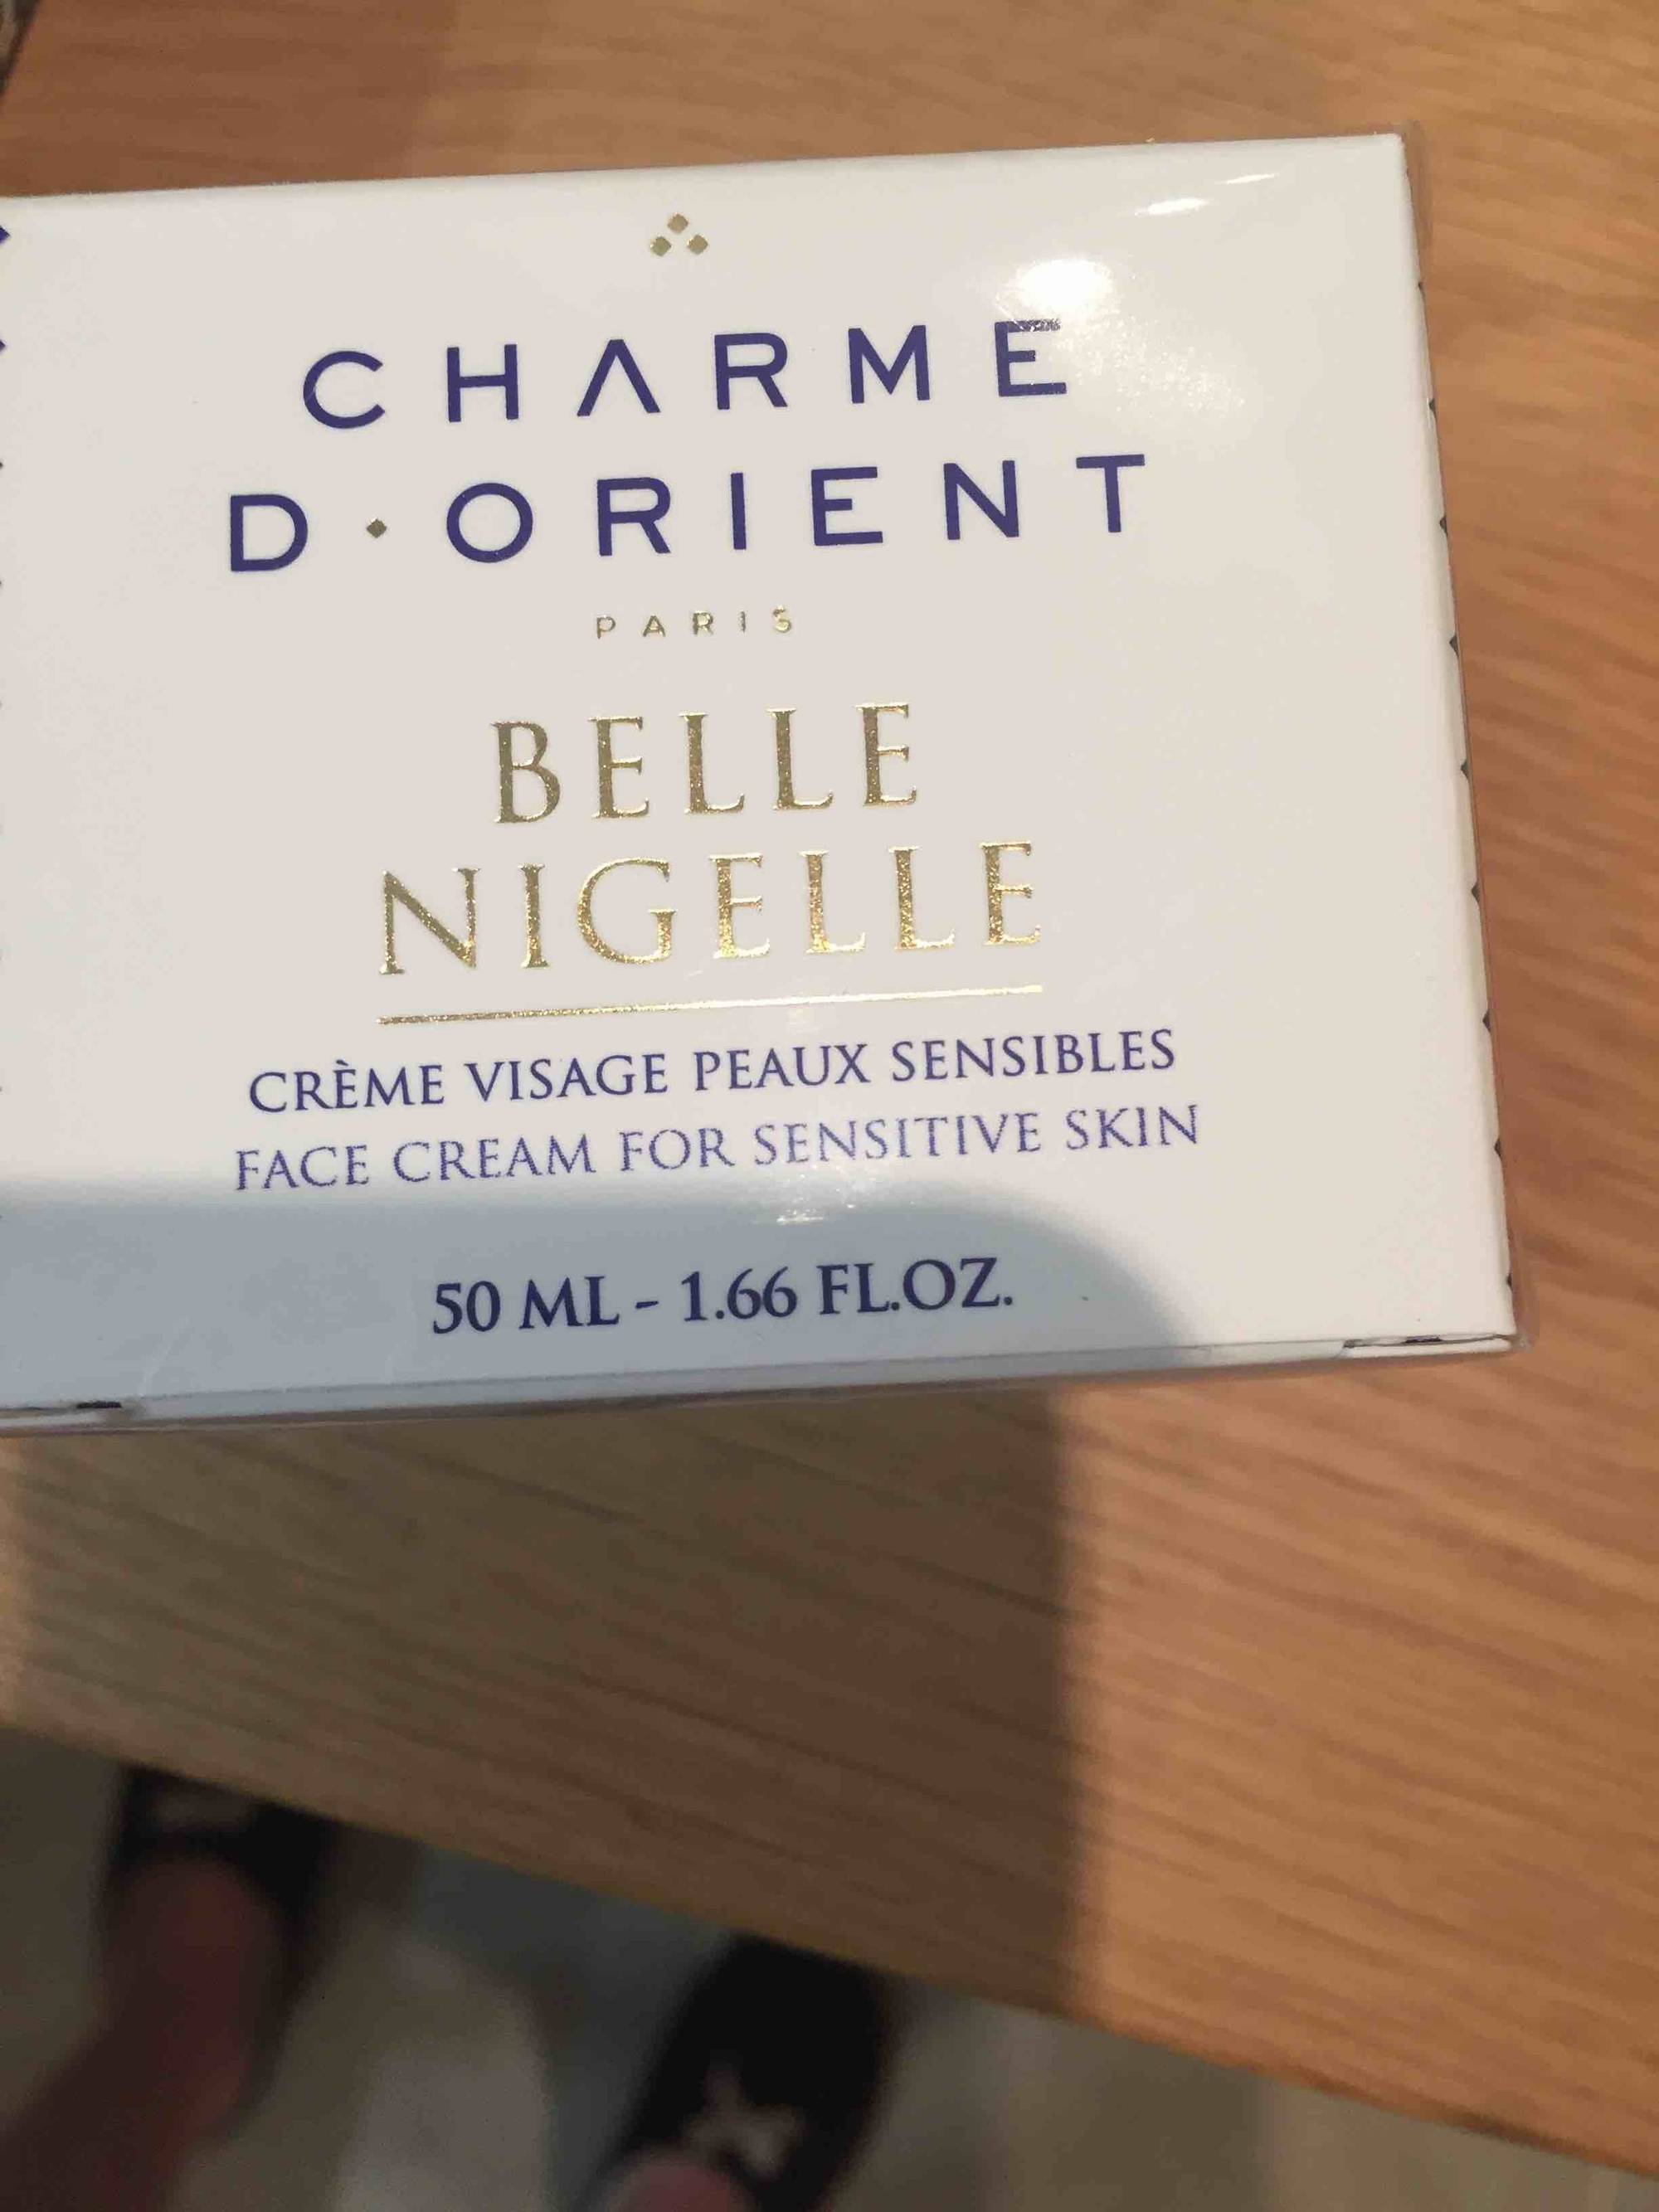 La crème visage - 50 ml - Charme d'Orient Paris